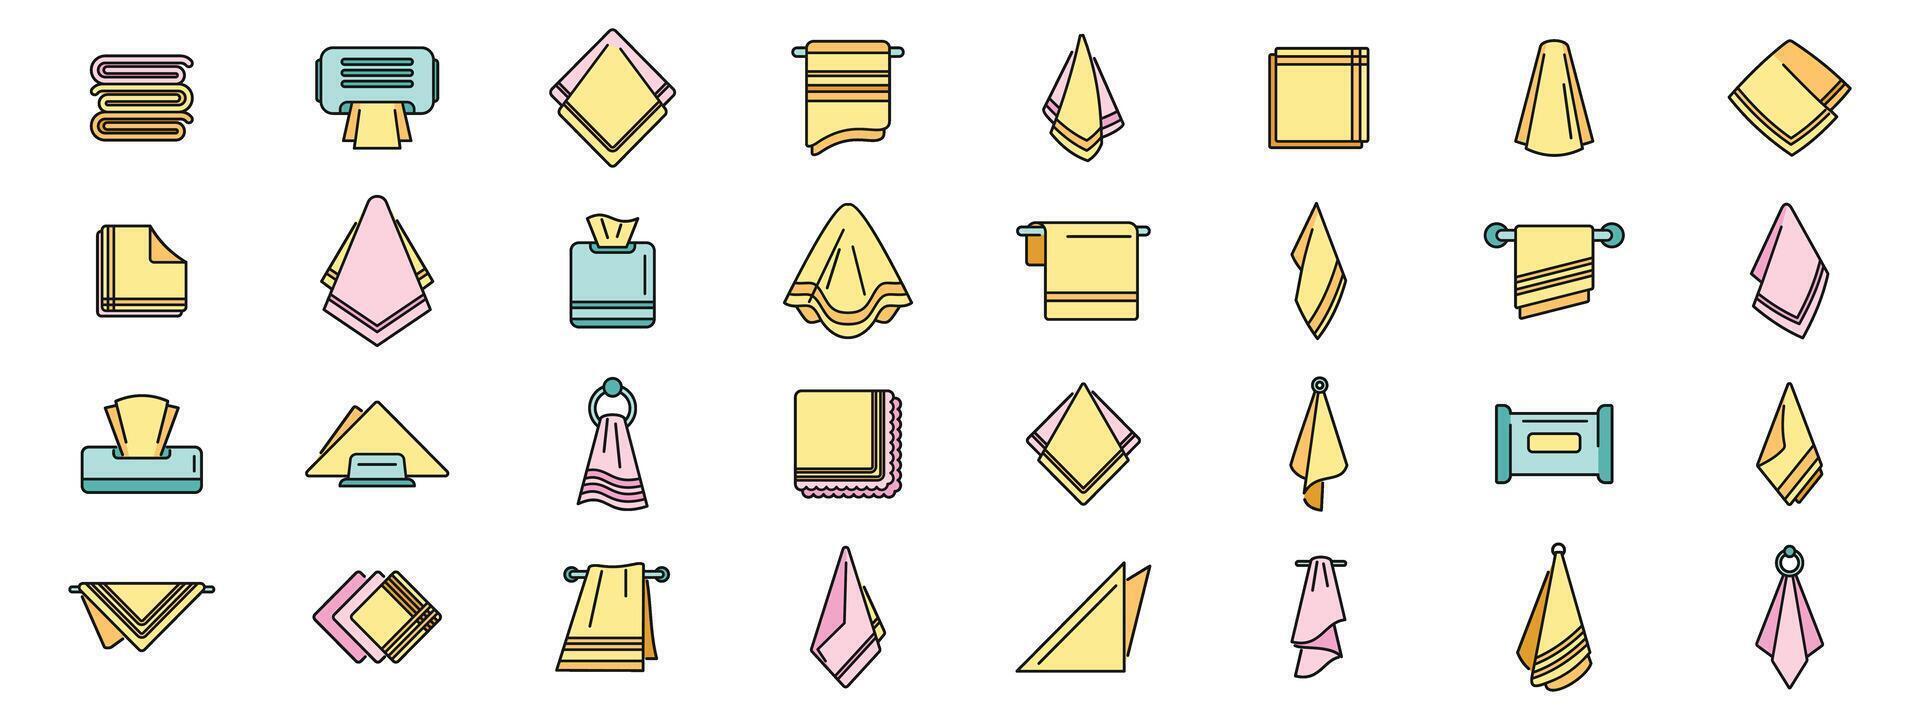 Handkerchief icons set vector color line